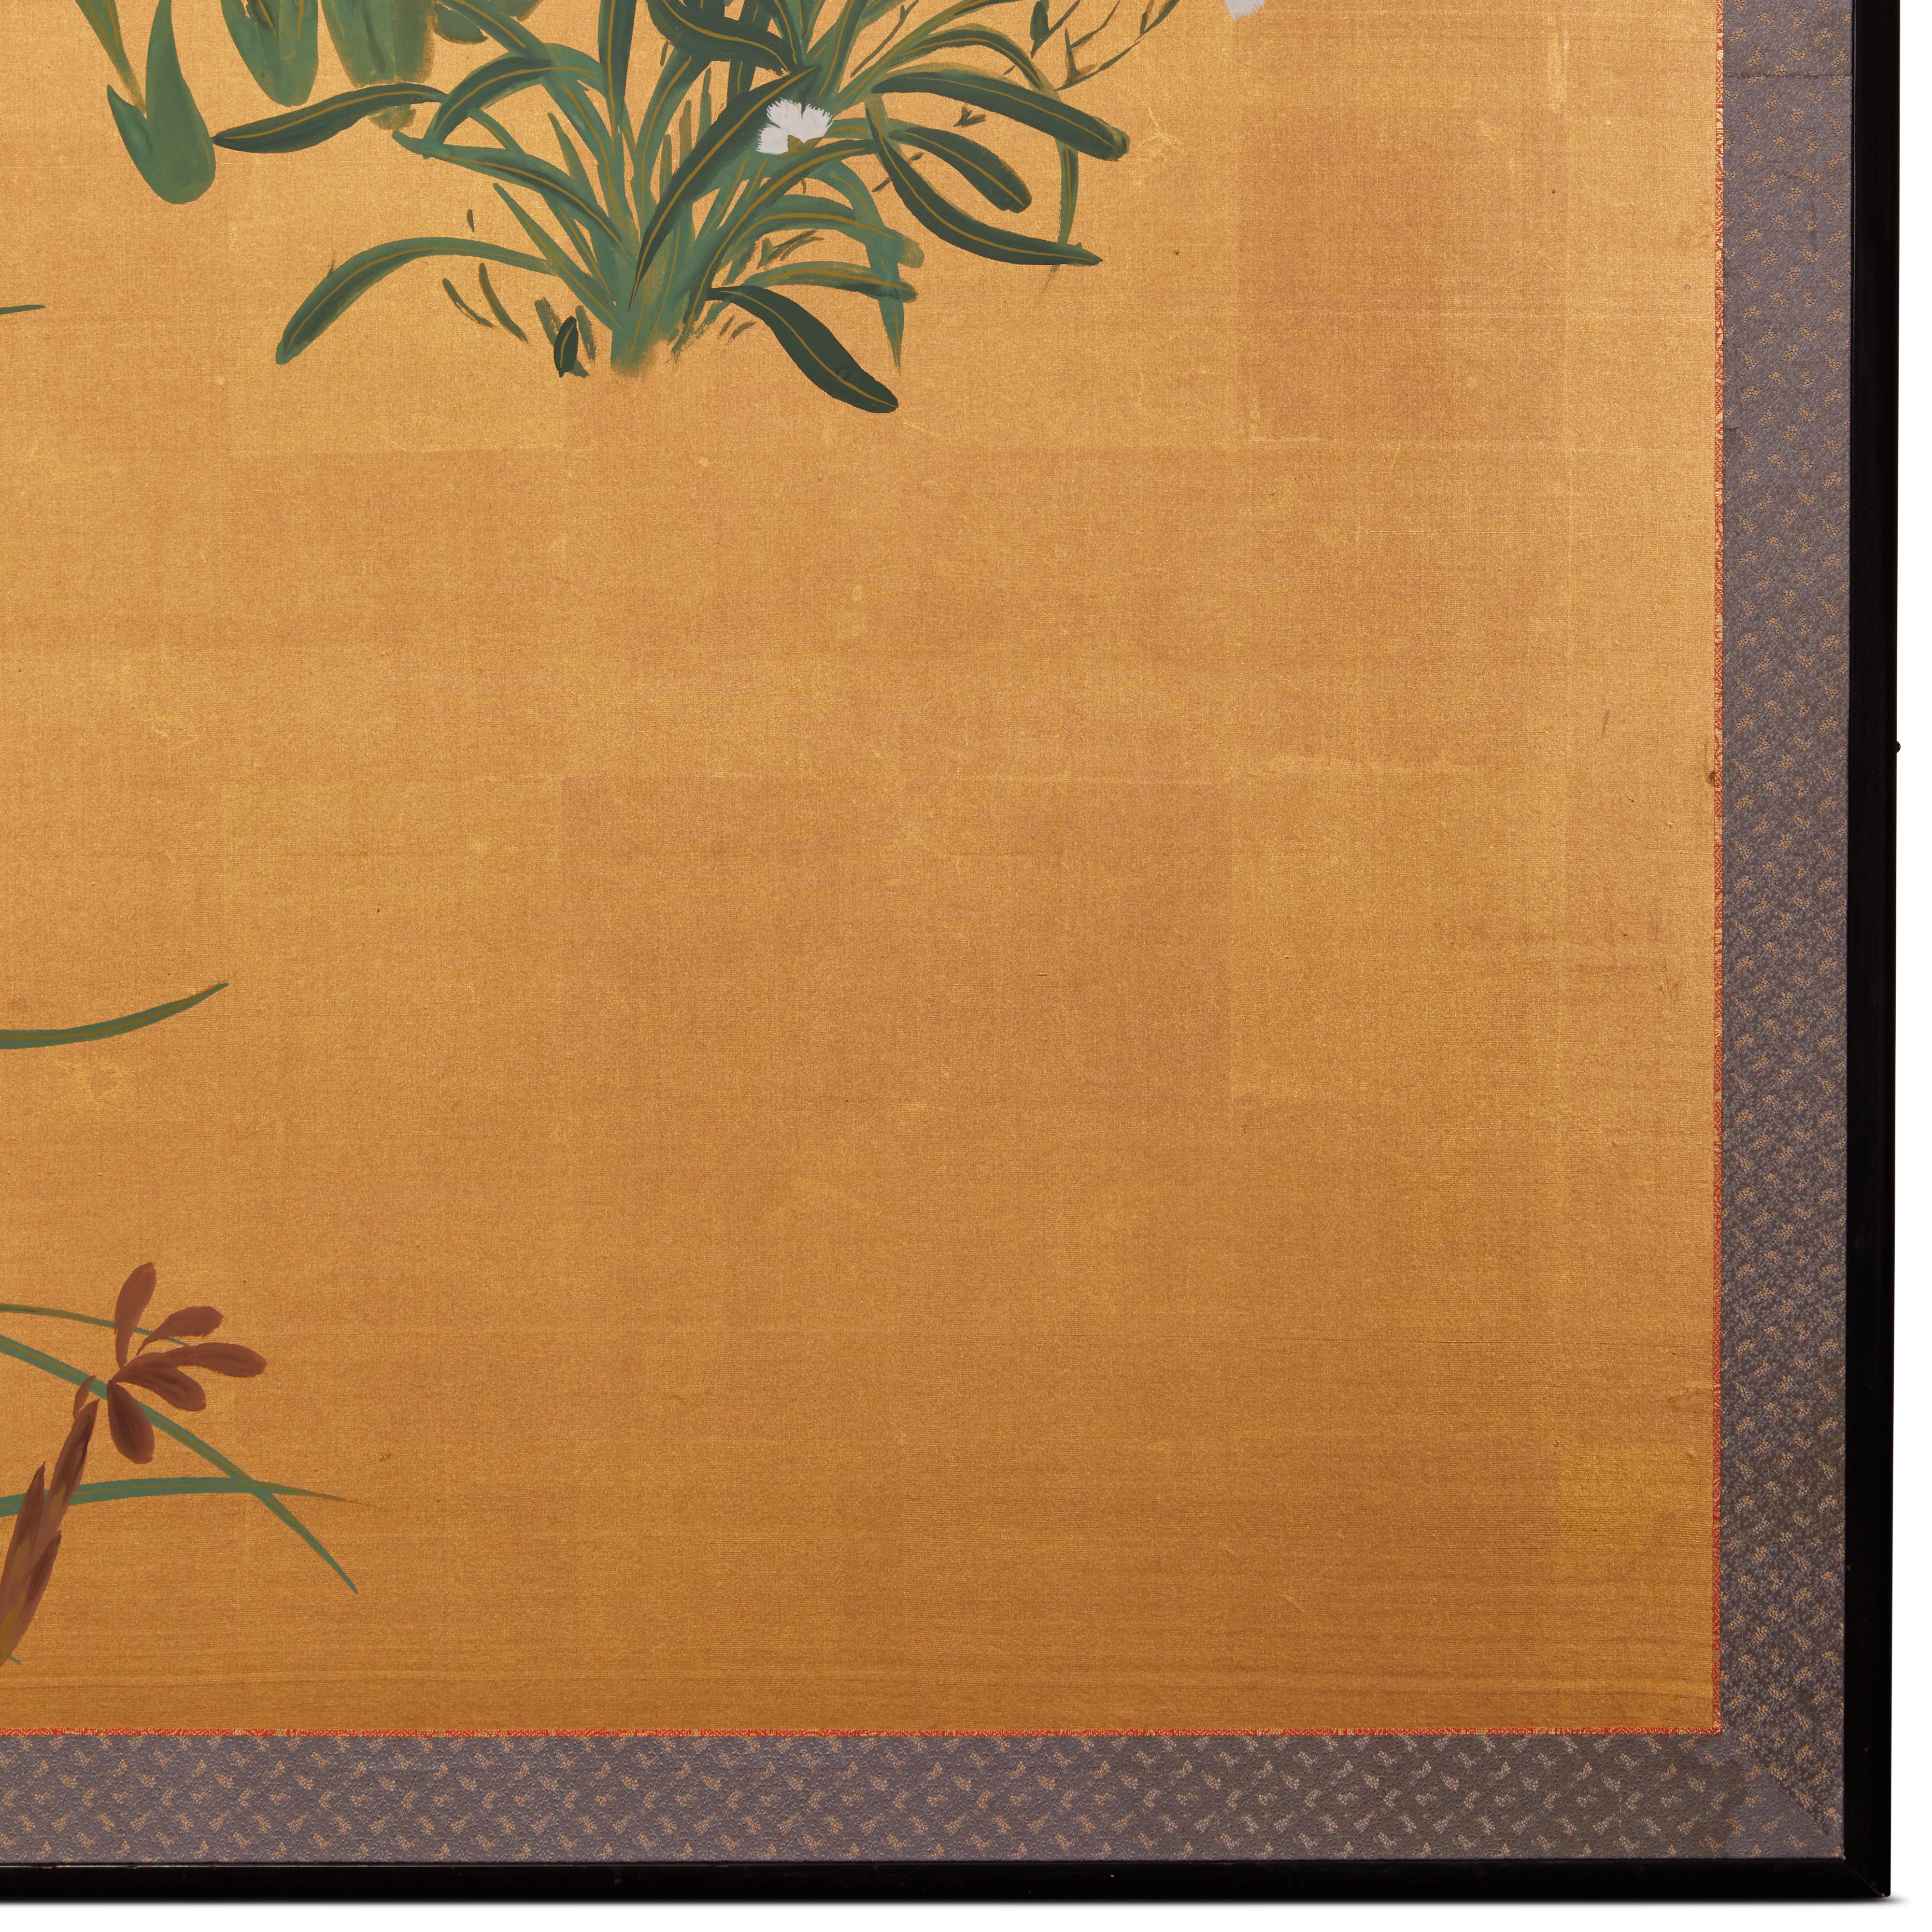 Gemälde aus der Showa-Periode (1926-1989) mit einem starken Muster aus exotischen Lilien und einer Gruppe von Nadeshiko (Dianthus) unter einem silbernen Mond auf Gold.  Dieses Gemälde hat ein modernes Flair, das auf die Zeit seiner Entstehung